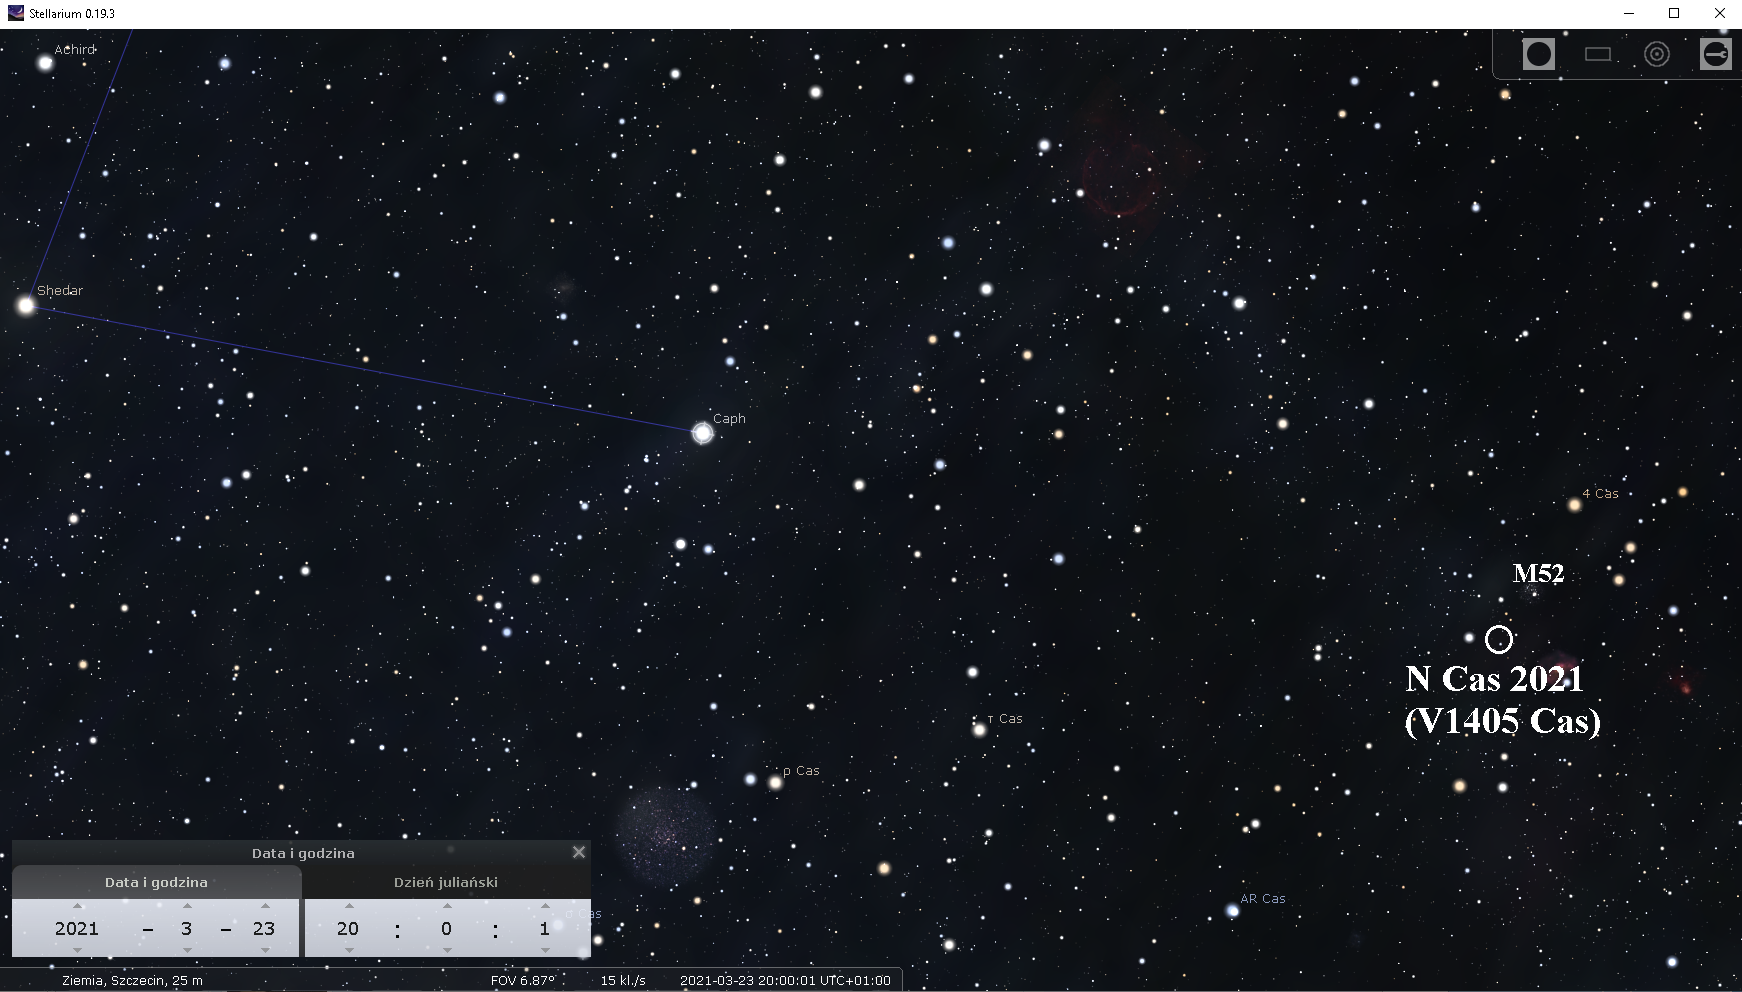 Obecnie (marcowy wieczór) Nową V1405 Cas można znaleźć np. przedłużając w prawo odcinek łączący dwie najjaśniejsze gwiazdy Kasjopei: Sheddar (α Cassiopeiae) i Caph (β Cassiopeiae). Nowa znajduje się około pół stopnia na południe od otwartej gromady gwiazdowej M52 i około pół stopnia na zachód od mgławicy Bąbel (NGC 7635). Źródło: Stellarium